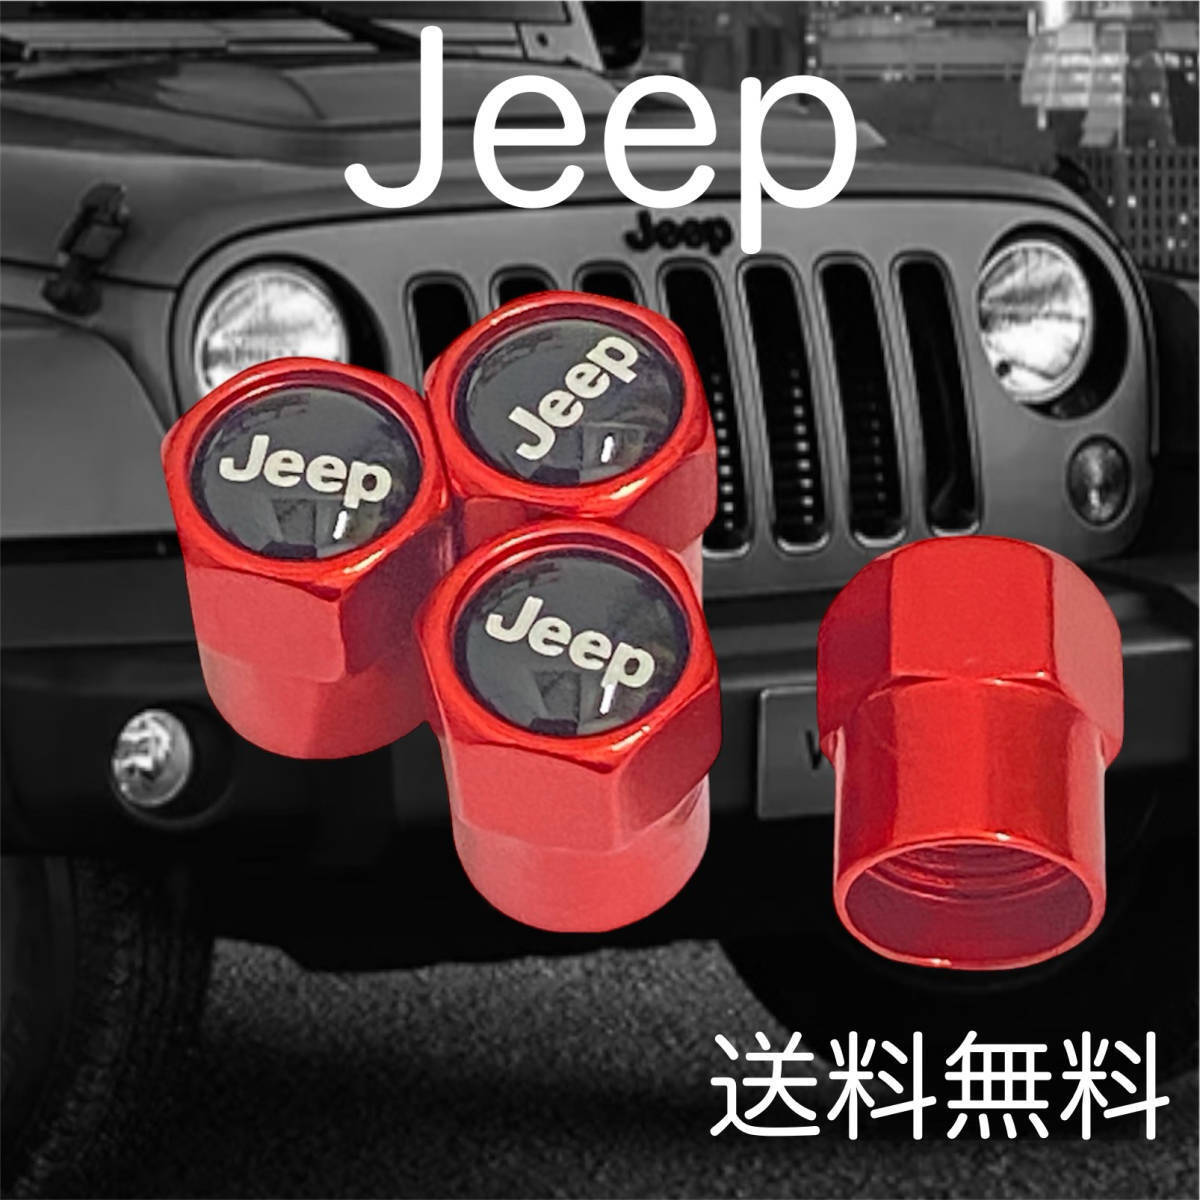 4個セット 送料無料 レッド Jeep エアバルブ カバー JEEP エアキャップ ジープ エアーバルブ タイヤ クライスラー チェロキー アクセサリーの画像1